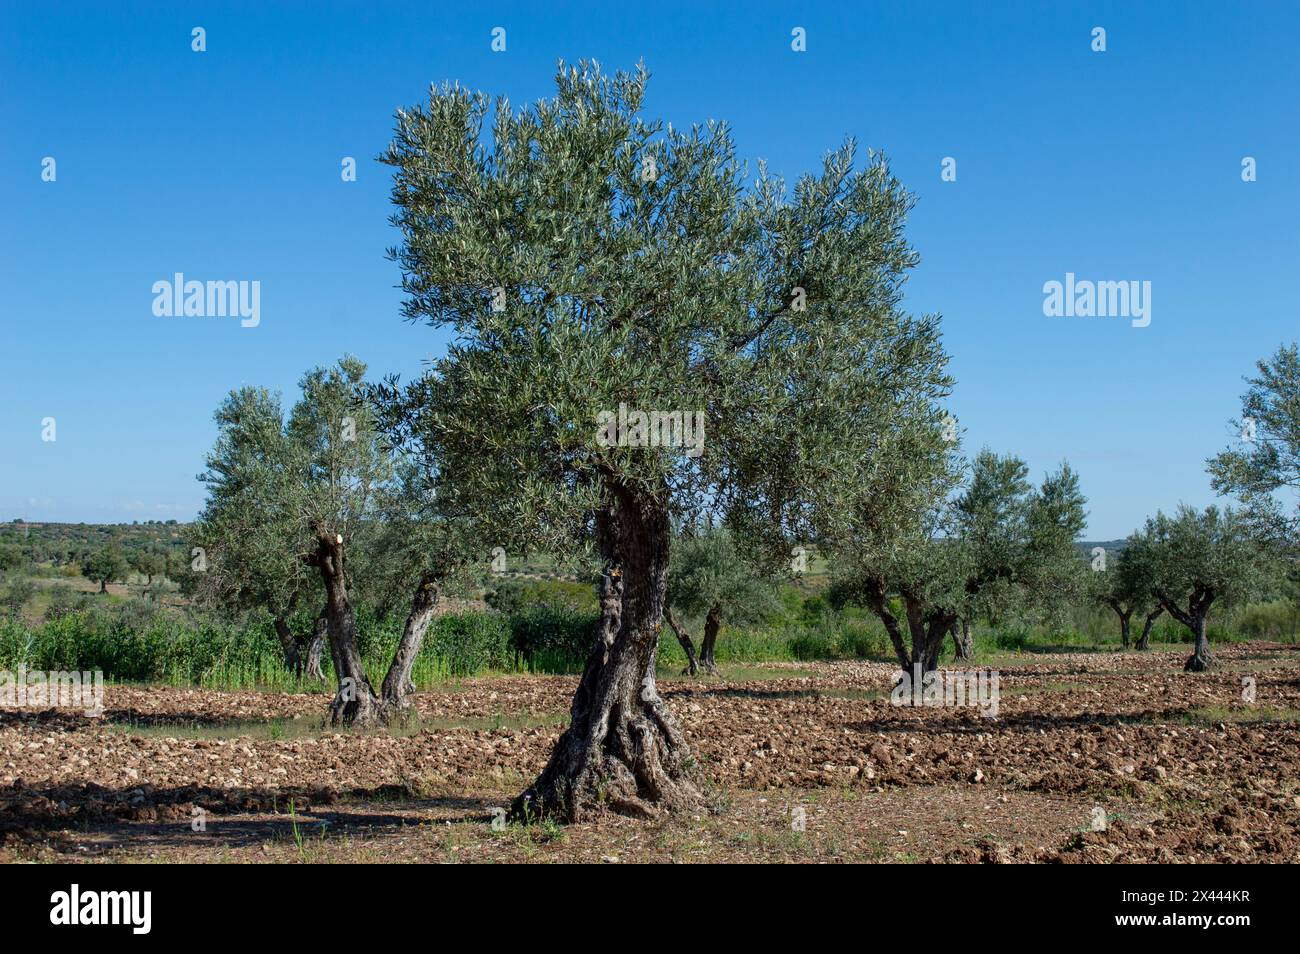 Centenary olive tree in Spanish olive grove in spring Stock Photo